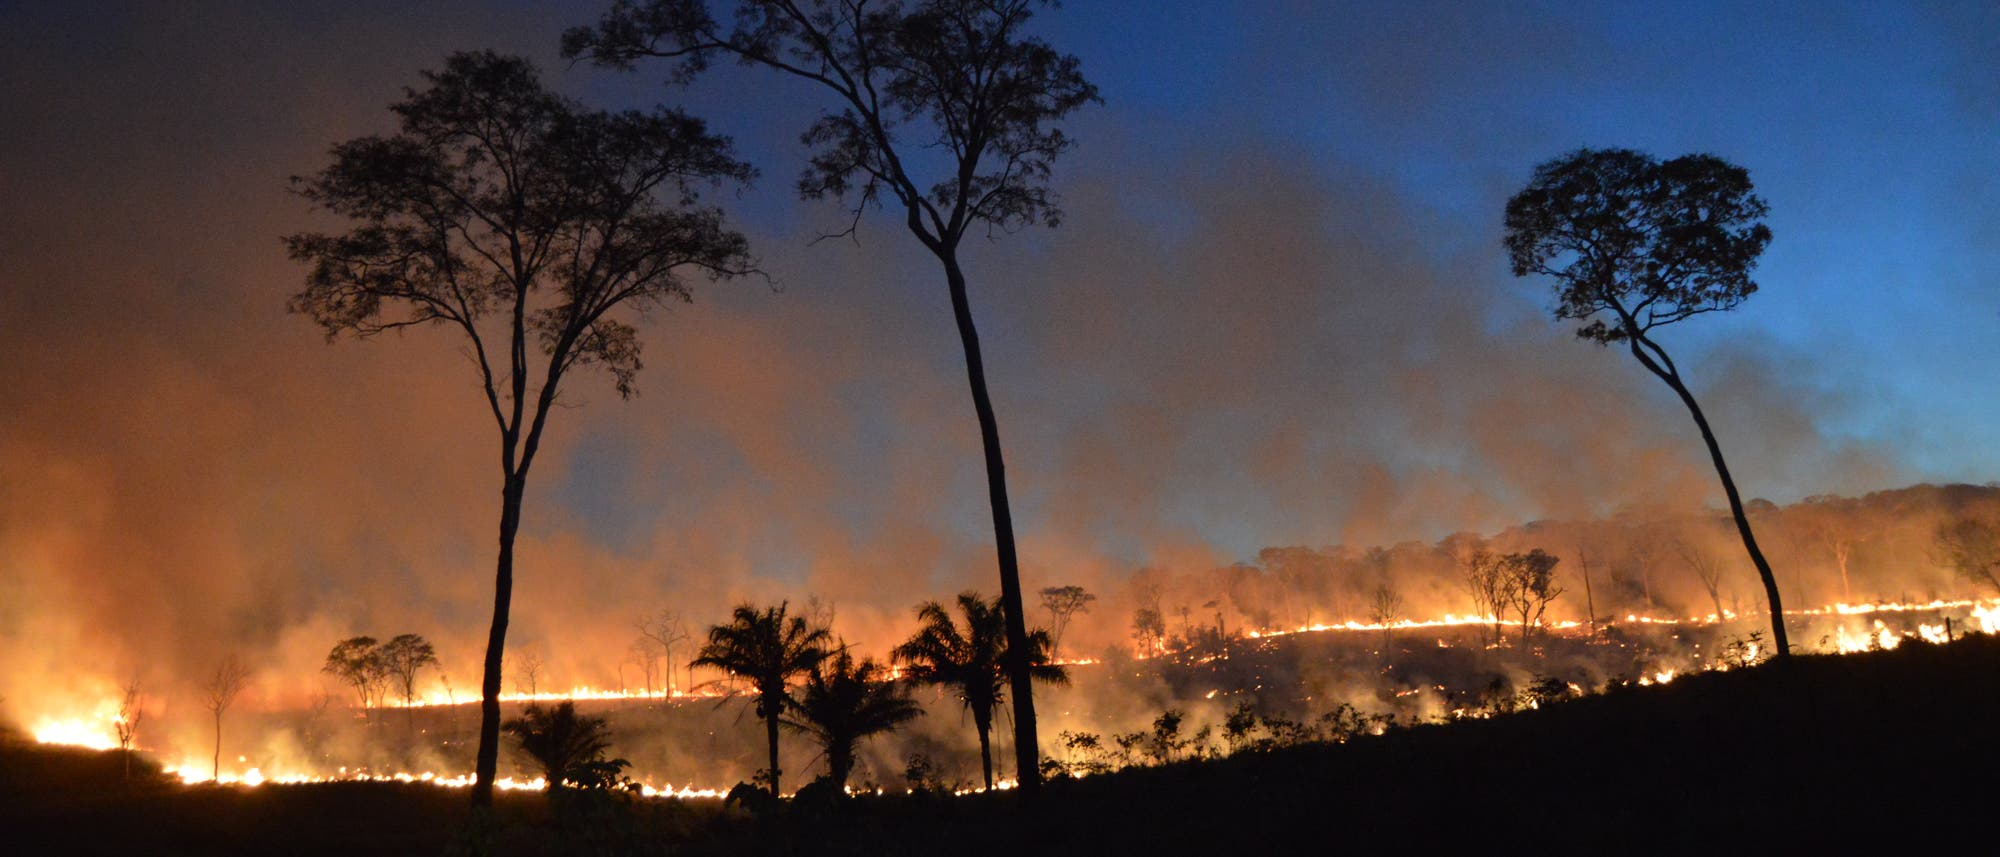 Auch in Bolivien brennen die Wälder: Unterholzfeuer in einem Trockenwald.